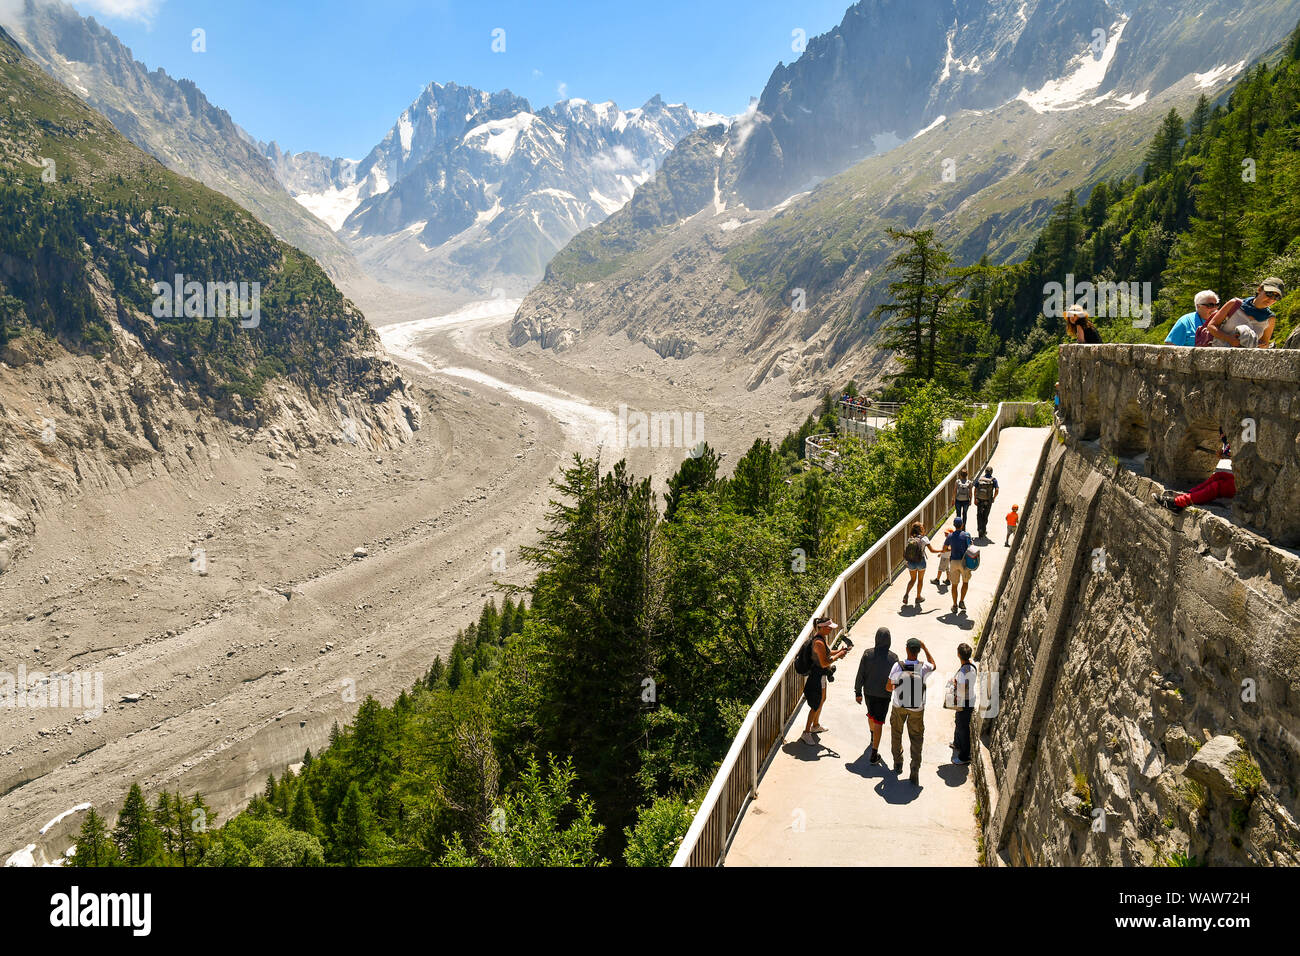 Vue sur la Mer de Glace, un glacier de vallée du massif du Mont Blanc, dans  les Alpes françaises, du train du Montenvers par les touristes en été,  Chamonix, France Photo Stock -